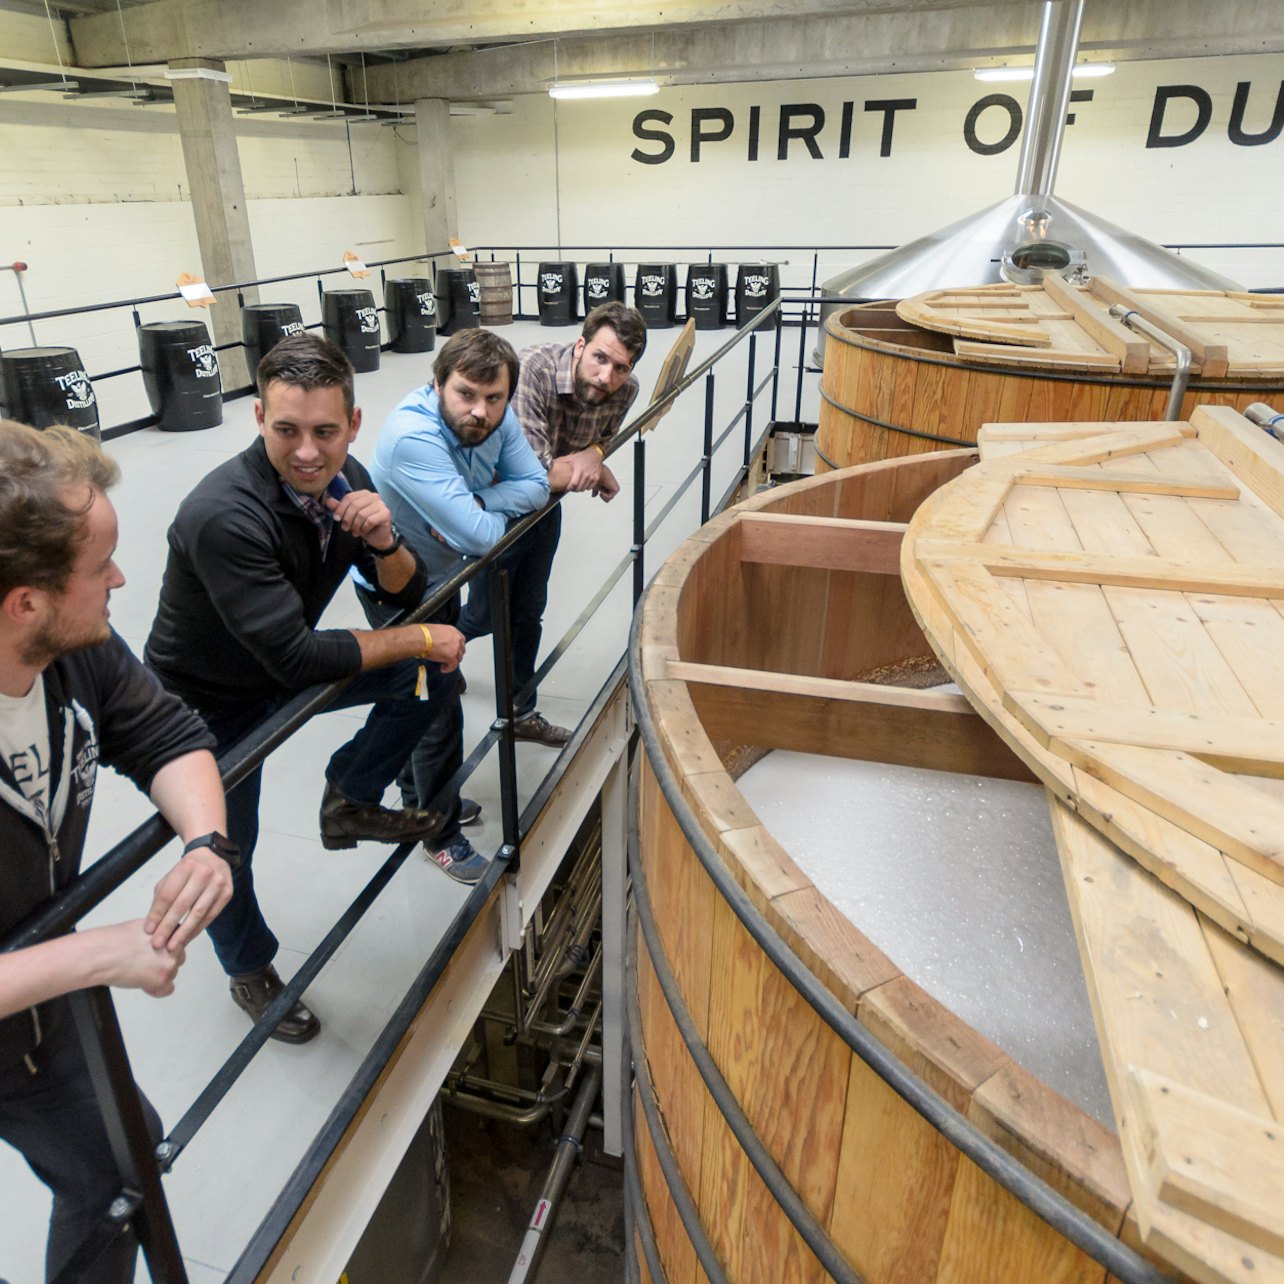 Distilleria di whisky Teeling: degustazione e tour - Alloggi in Dublino